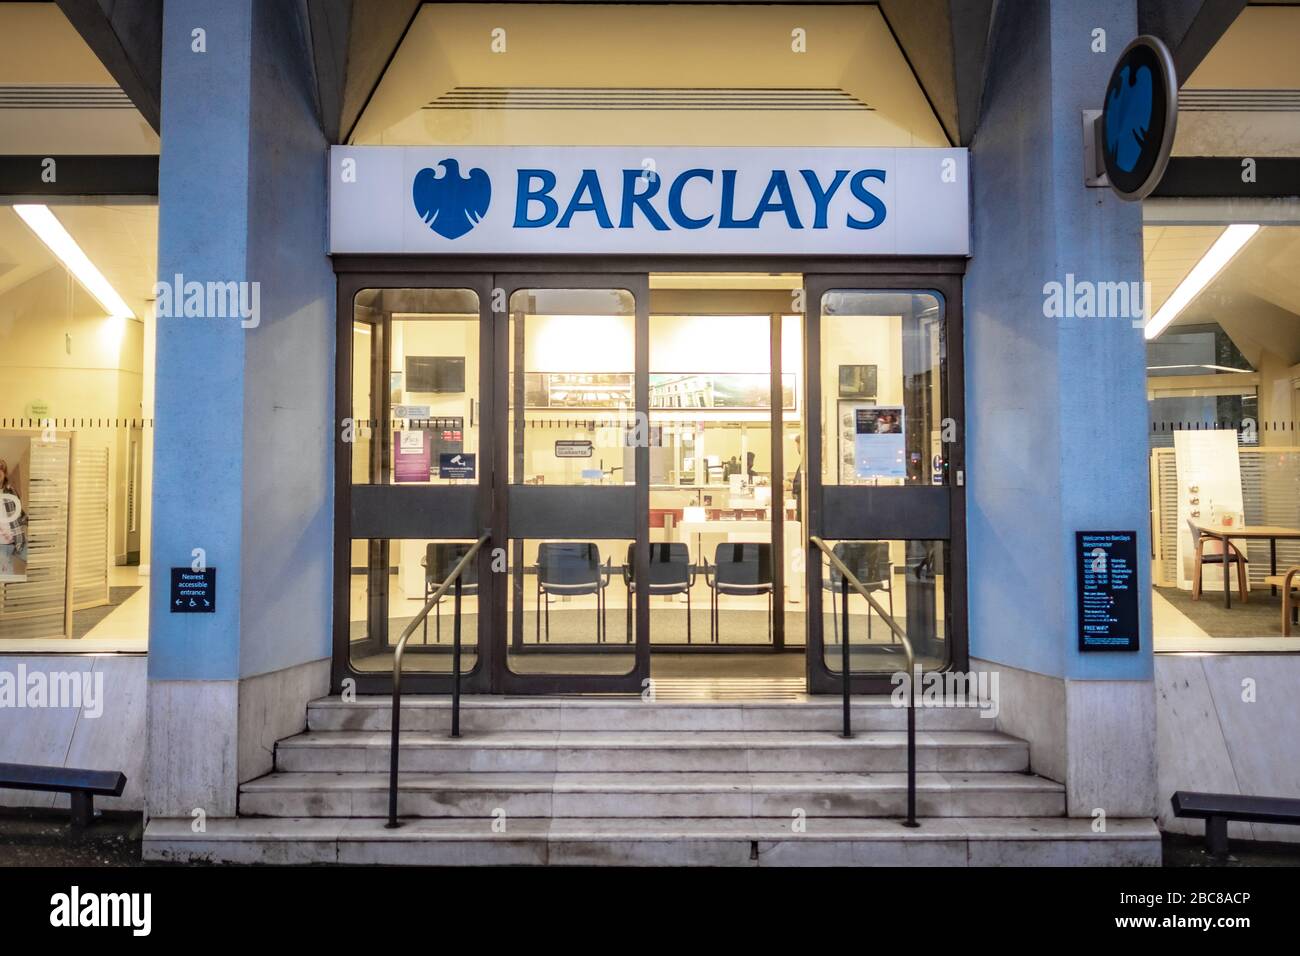 Señalización de sucursales bancarias de Barclays High Street - Londres, Reino Unido Foto de stock